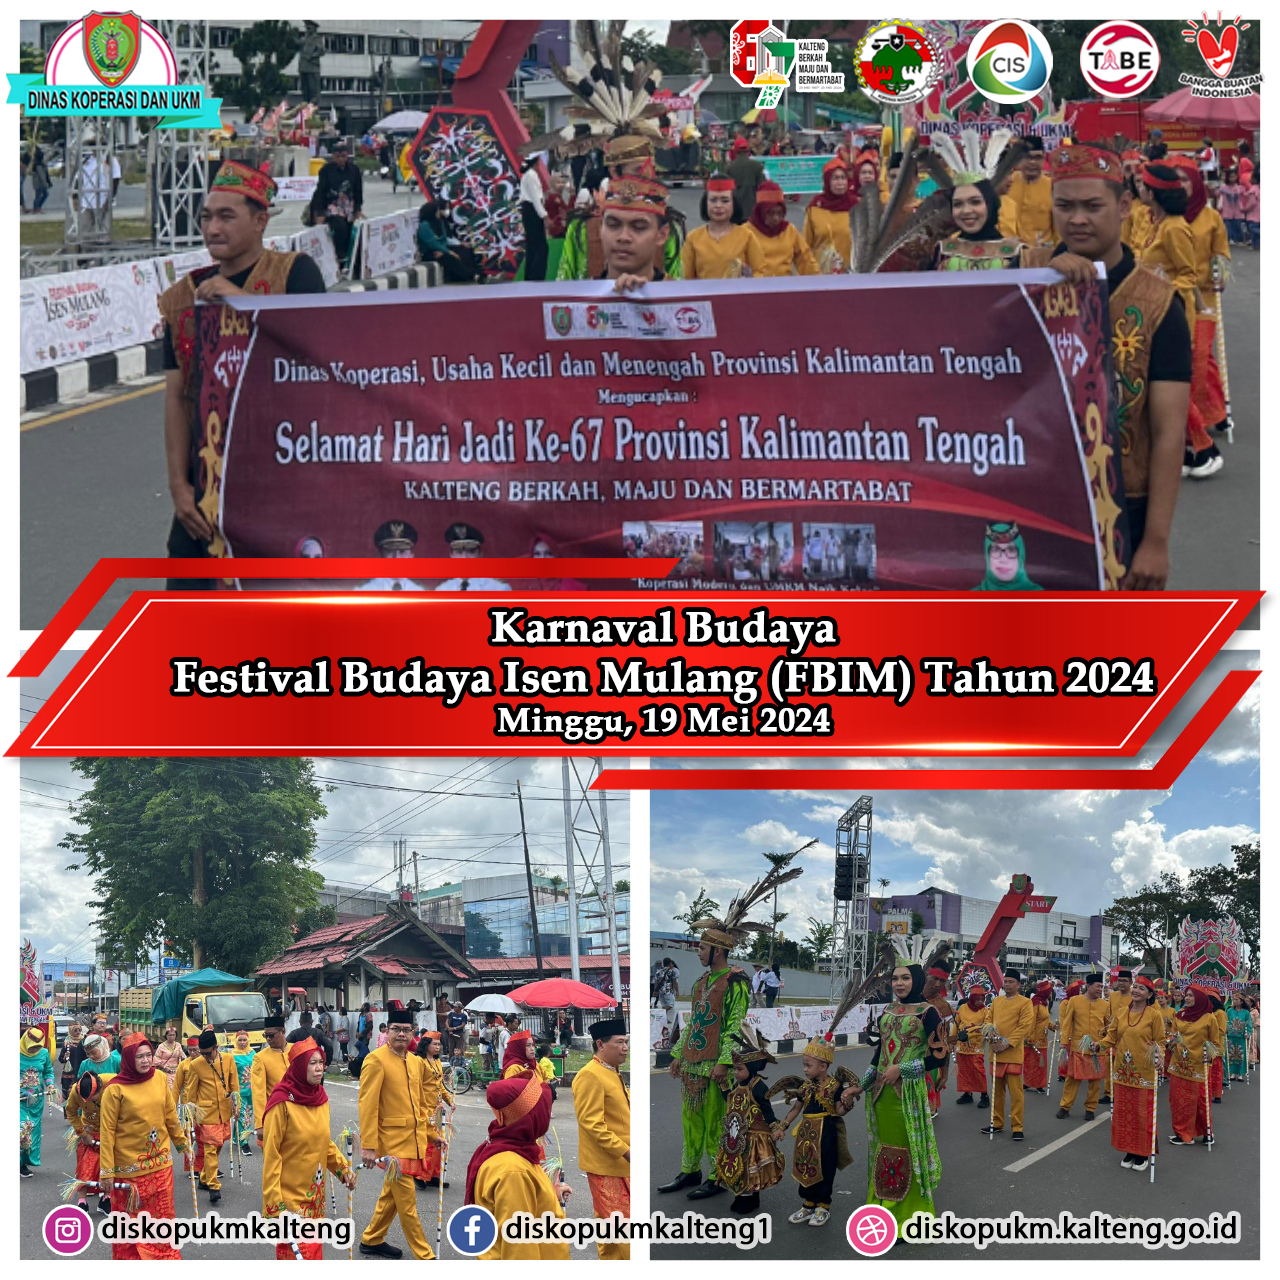 Dinas Koperasi, Usaha Kecil dan Menengah Provinsi Kalimantan Tengah turut serta memeriahkan Karnaval Budaya Festival Budaya Isen Mulang Tahun 2024